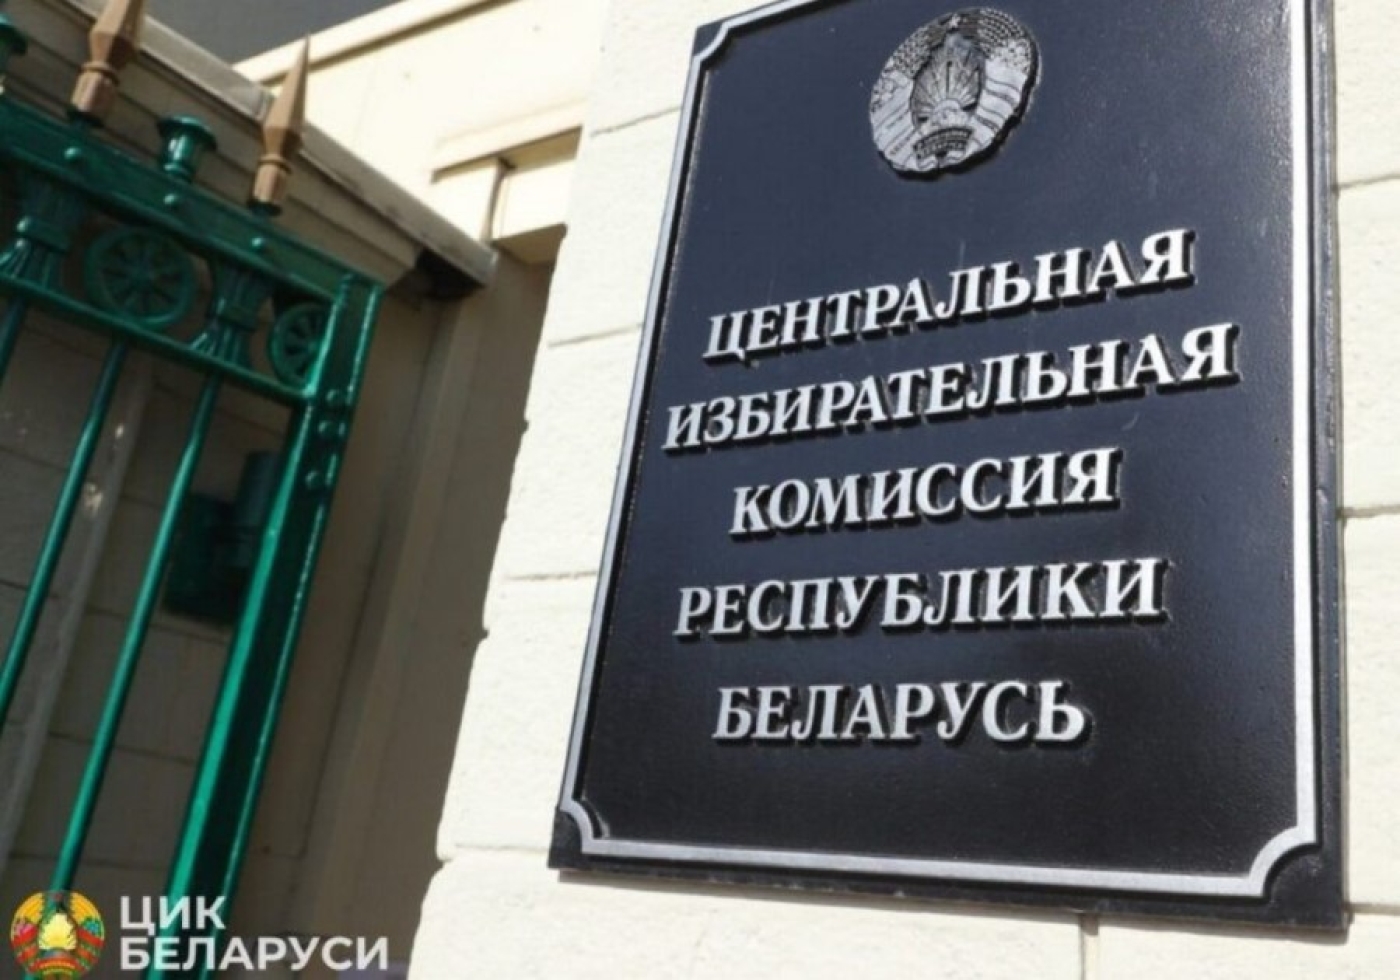 Сообщение об образовании Минской областной и окружных избирательных комиссий